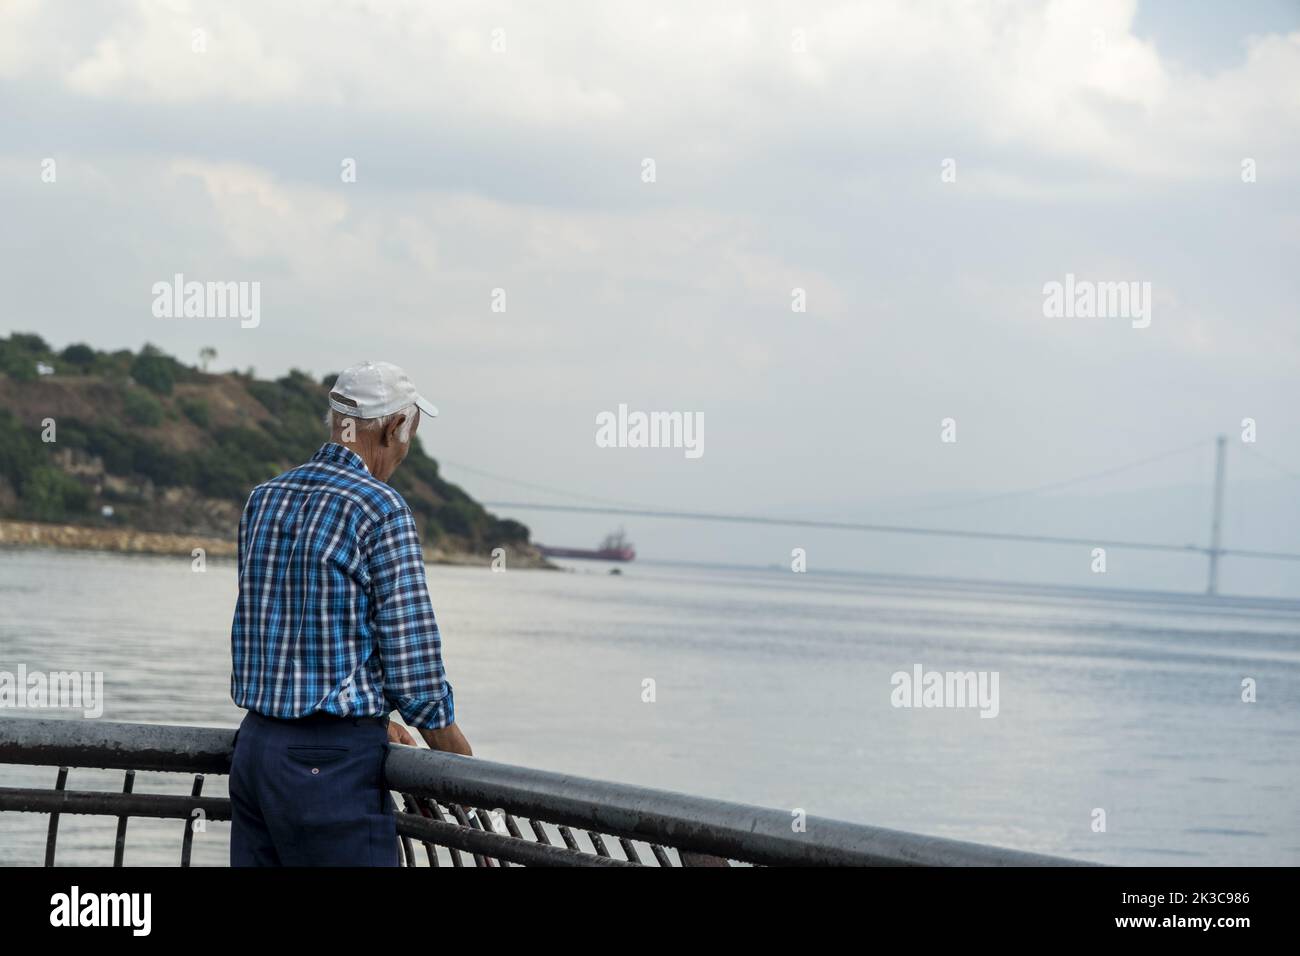 Dos tourné vieil homme regardant vers l'avant et essayant de pêcher, scène cinématographique, idée de passe-temps d'homme plus âgé, scène calme et détendue, pont et montagne Banque D'Images